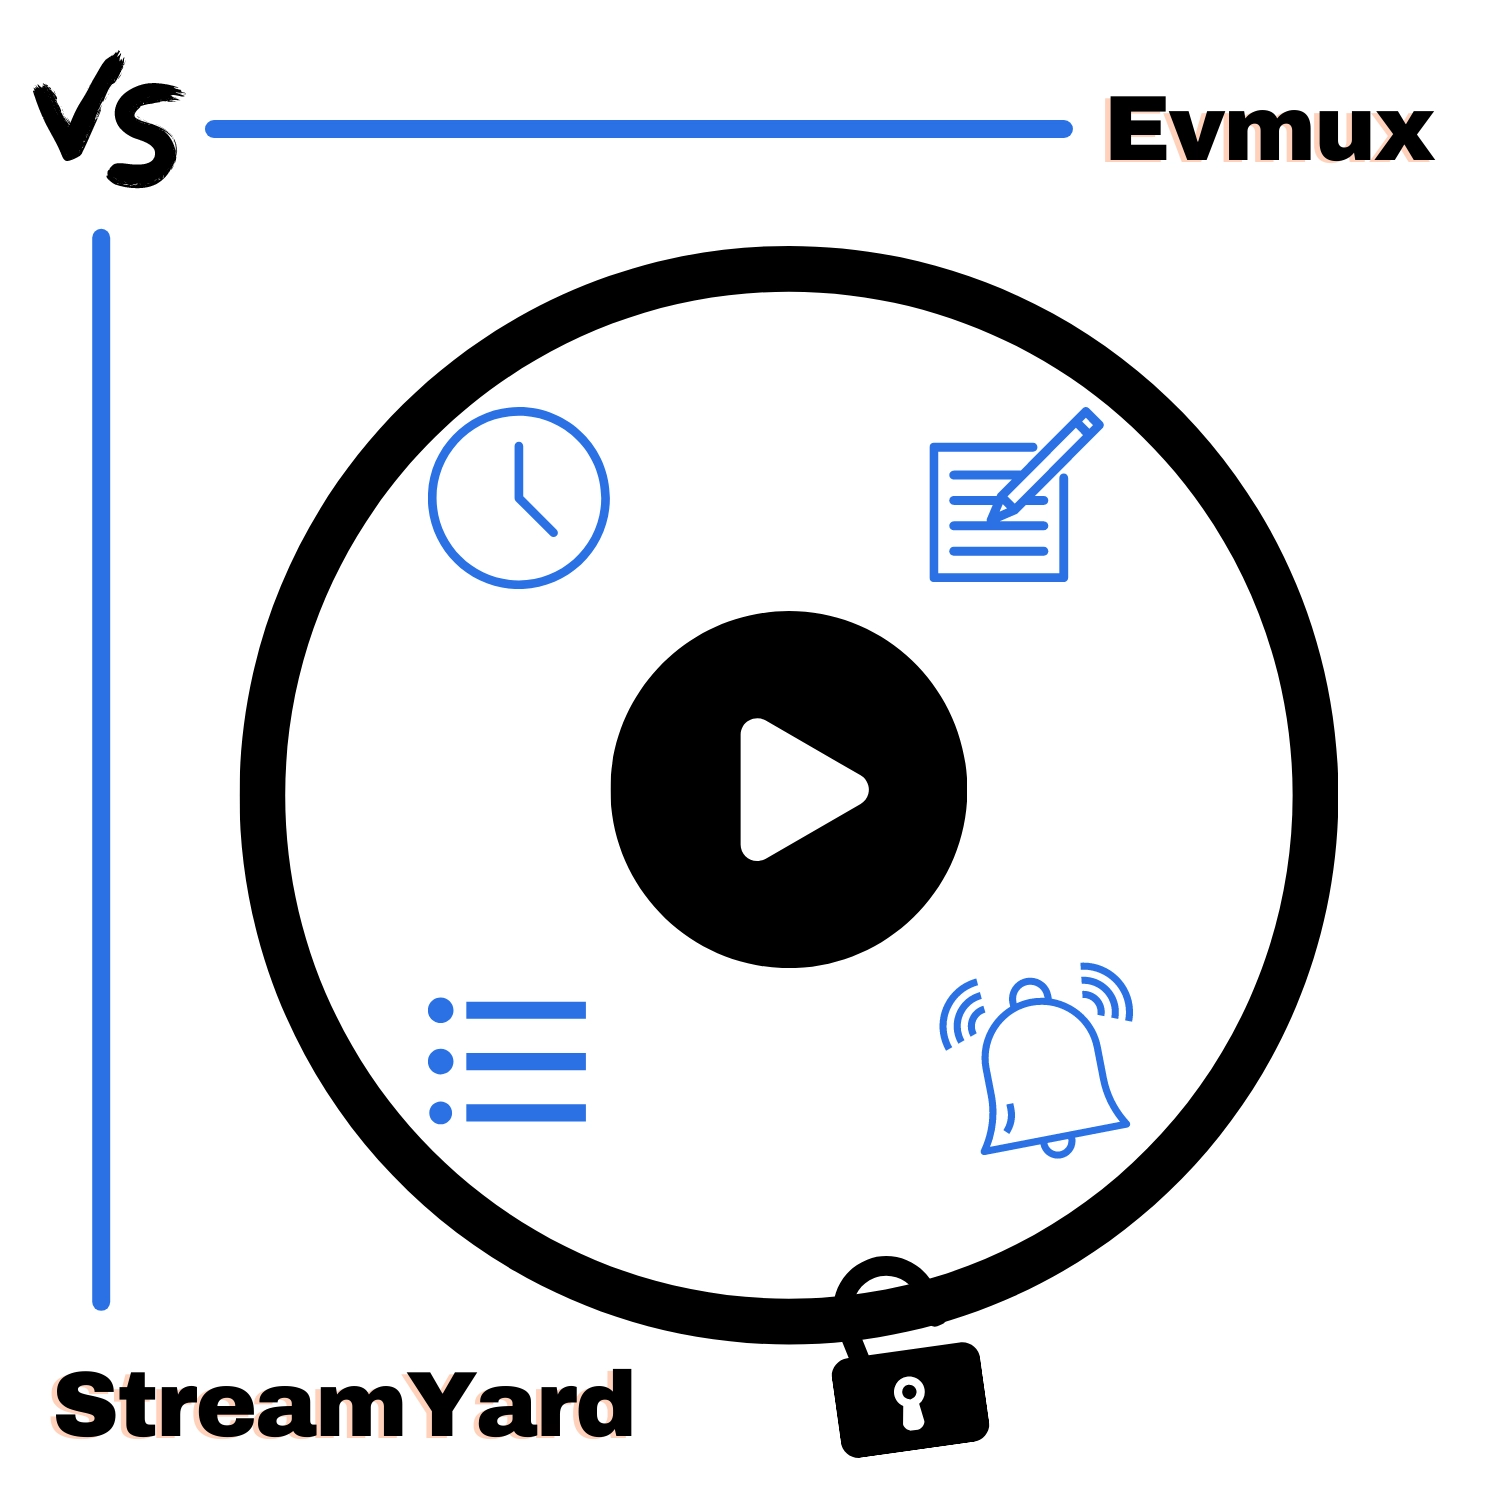 Evmux vs StreamYard